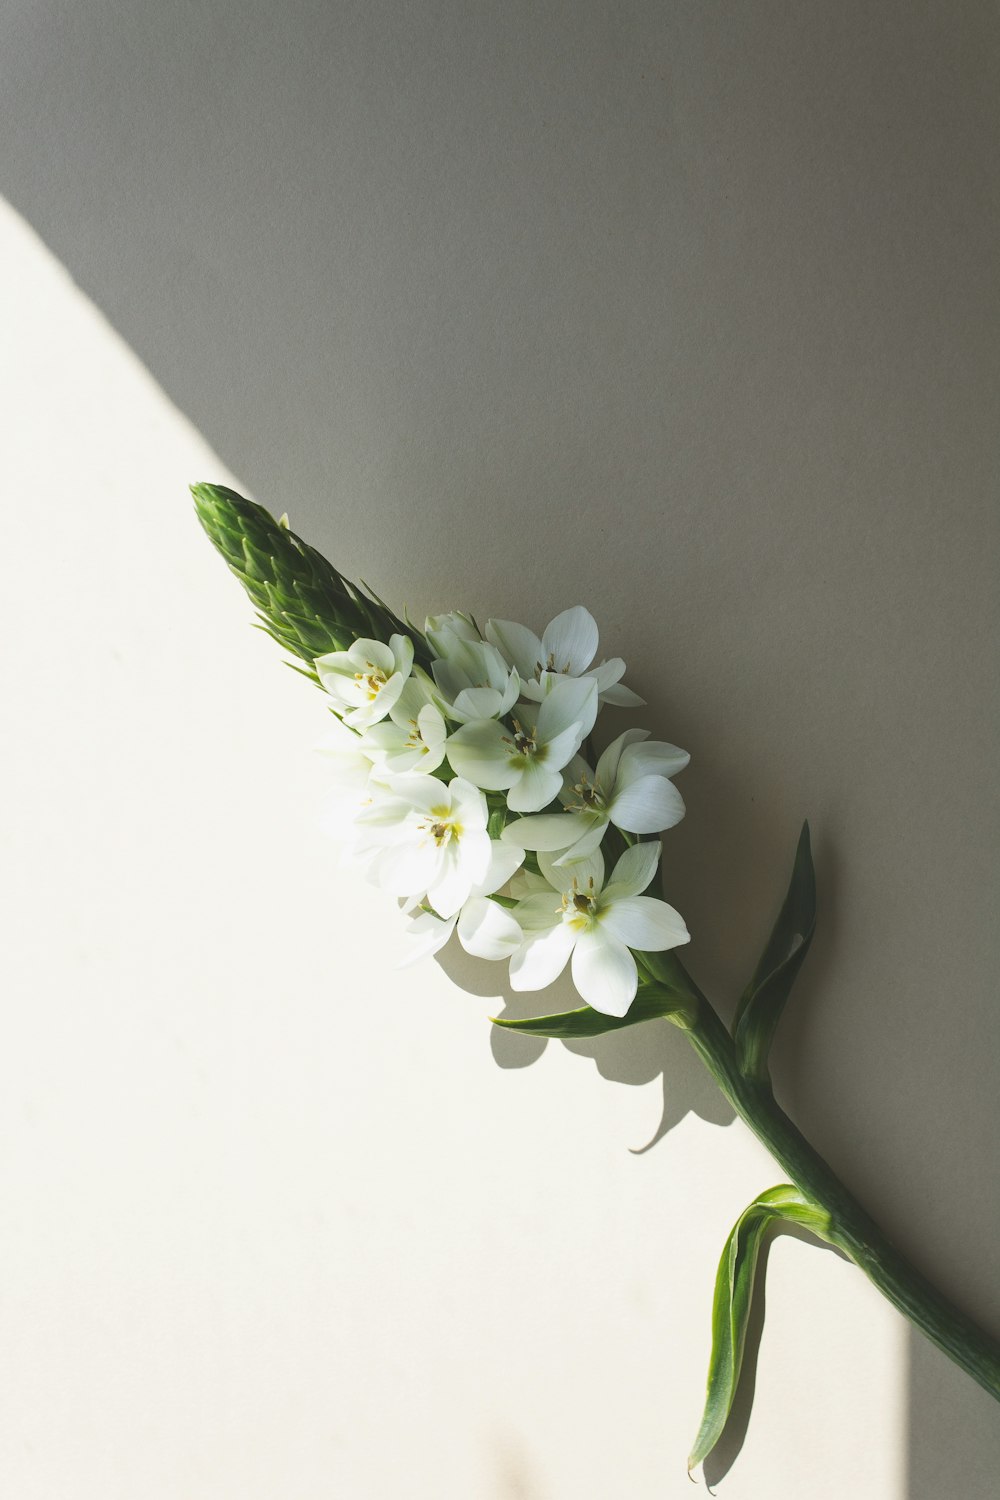 흰색 표면에 녹색 줄기가 있는 흰색 꽃